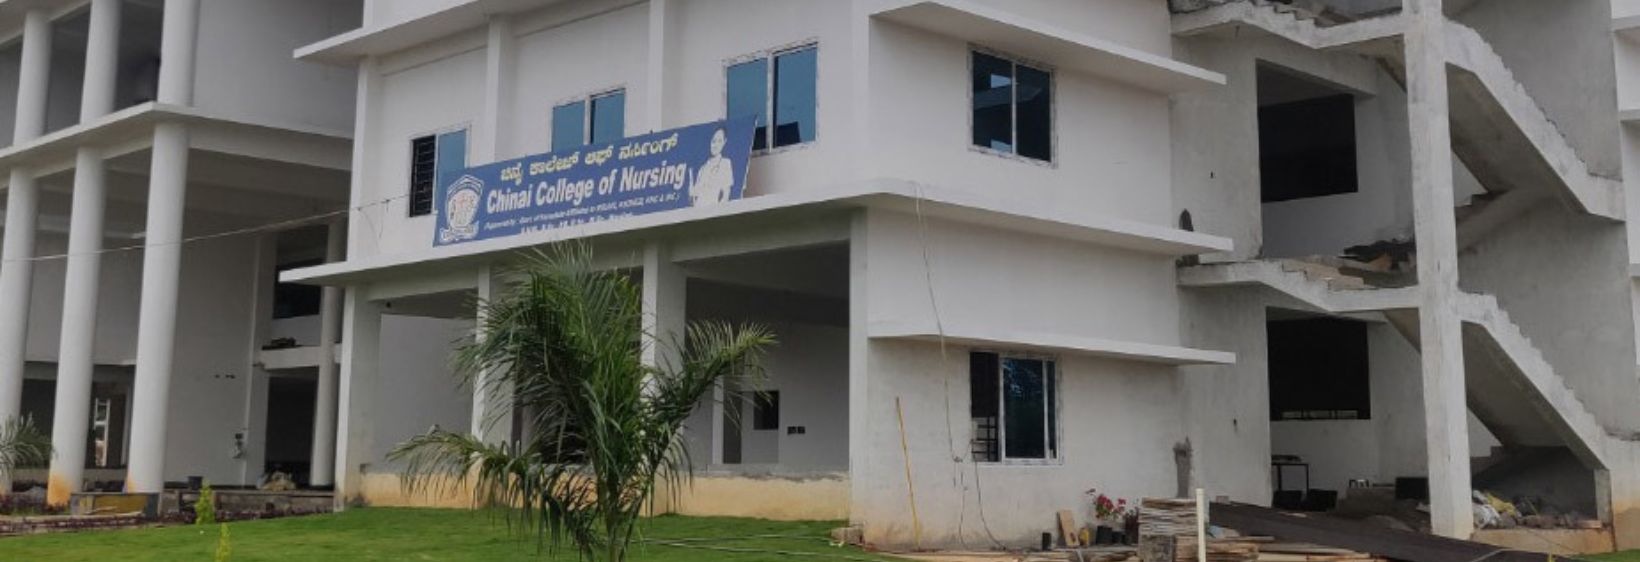 Chinai College of Nursing - Bangalore